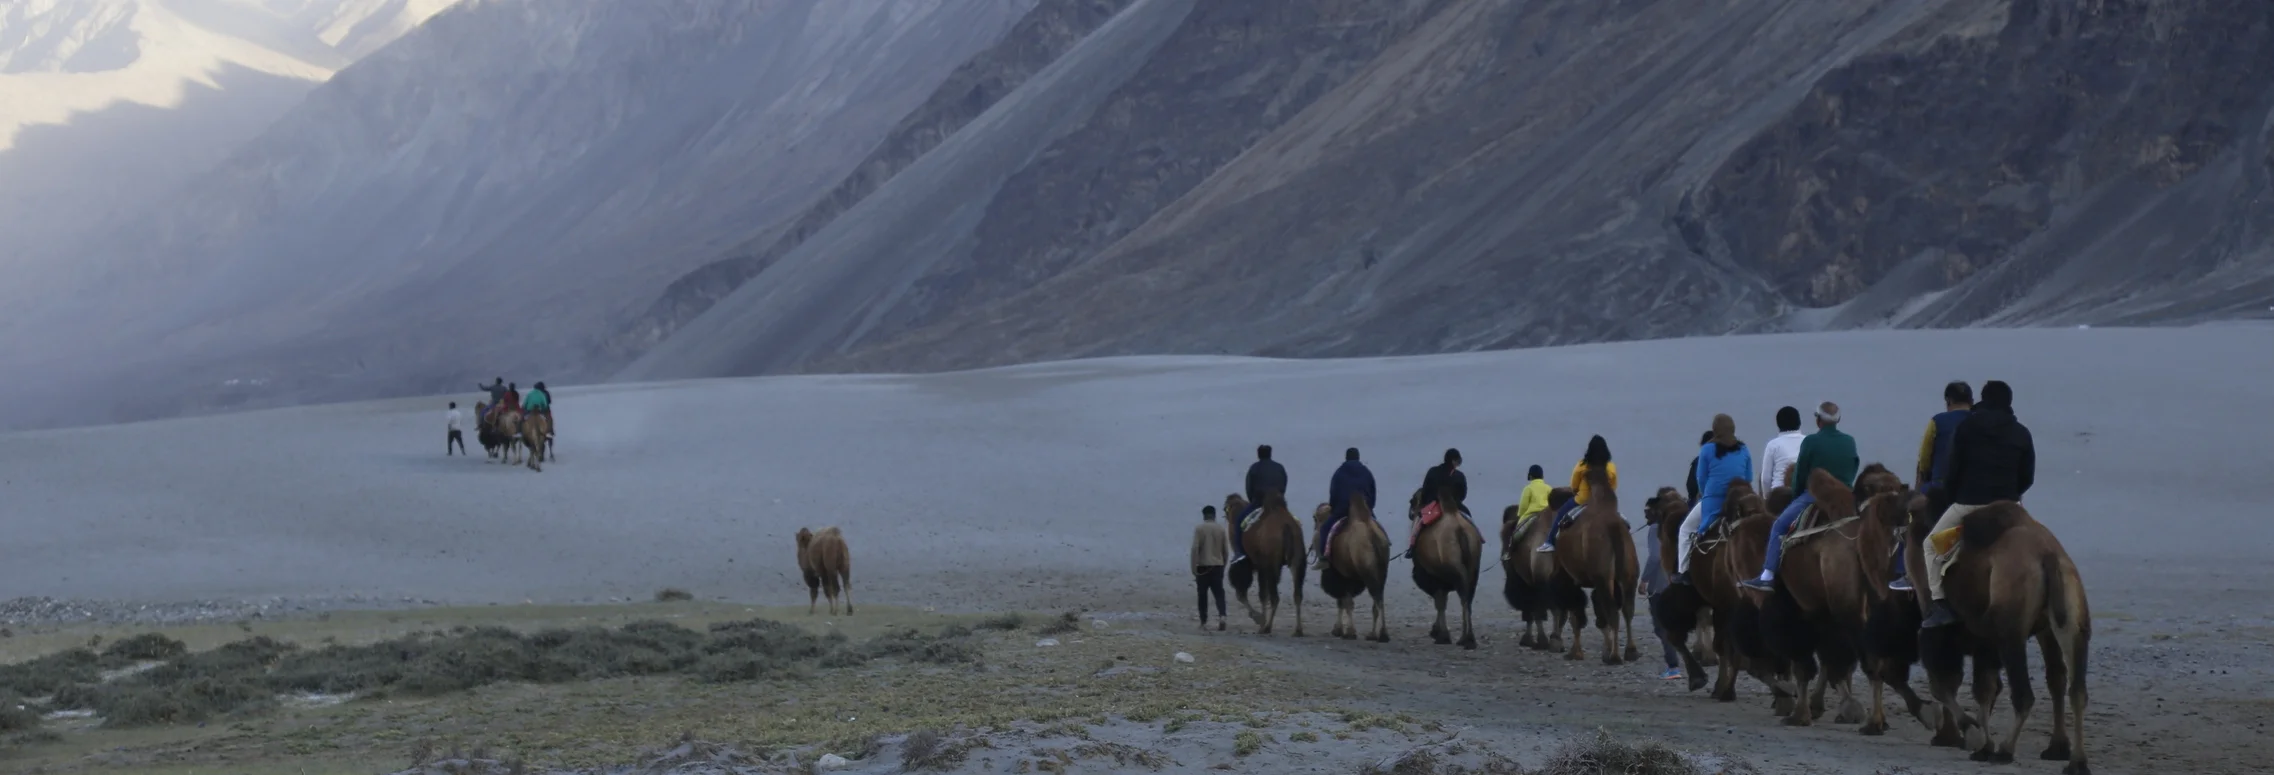 Leh ladakh the famous tourist attractions